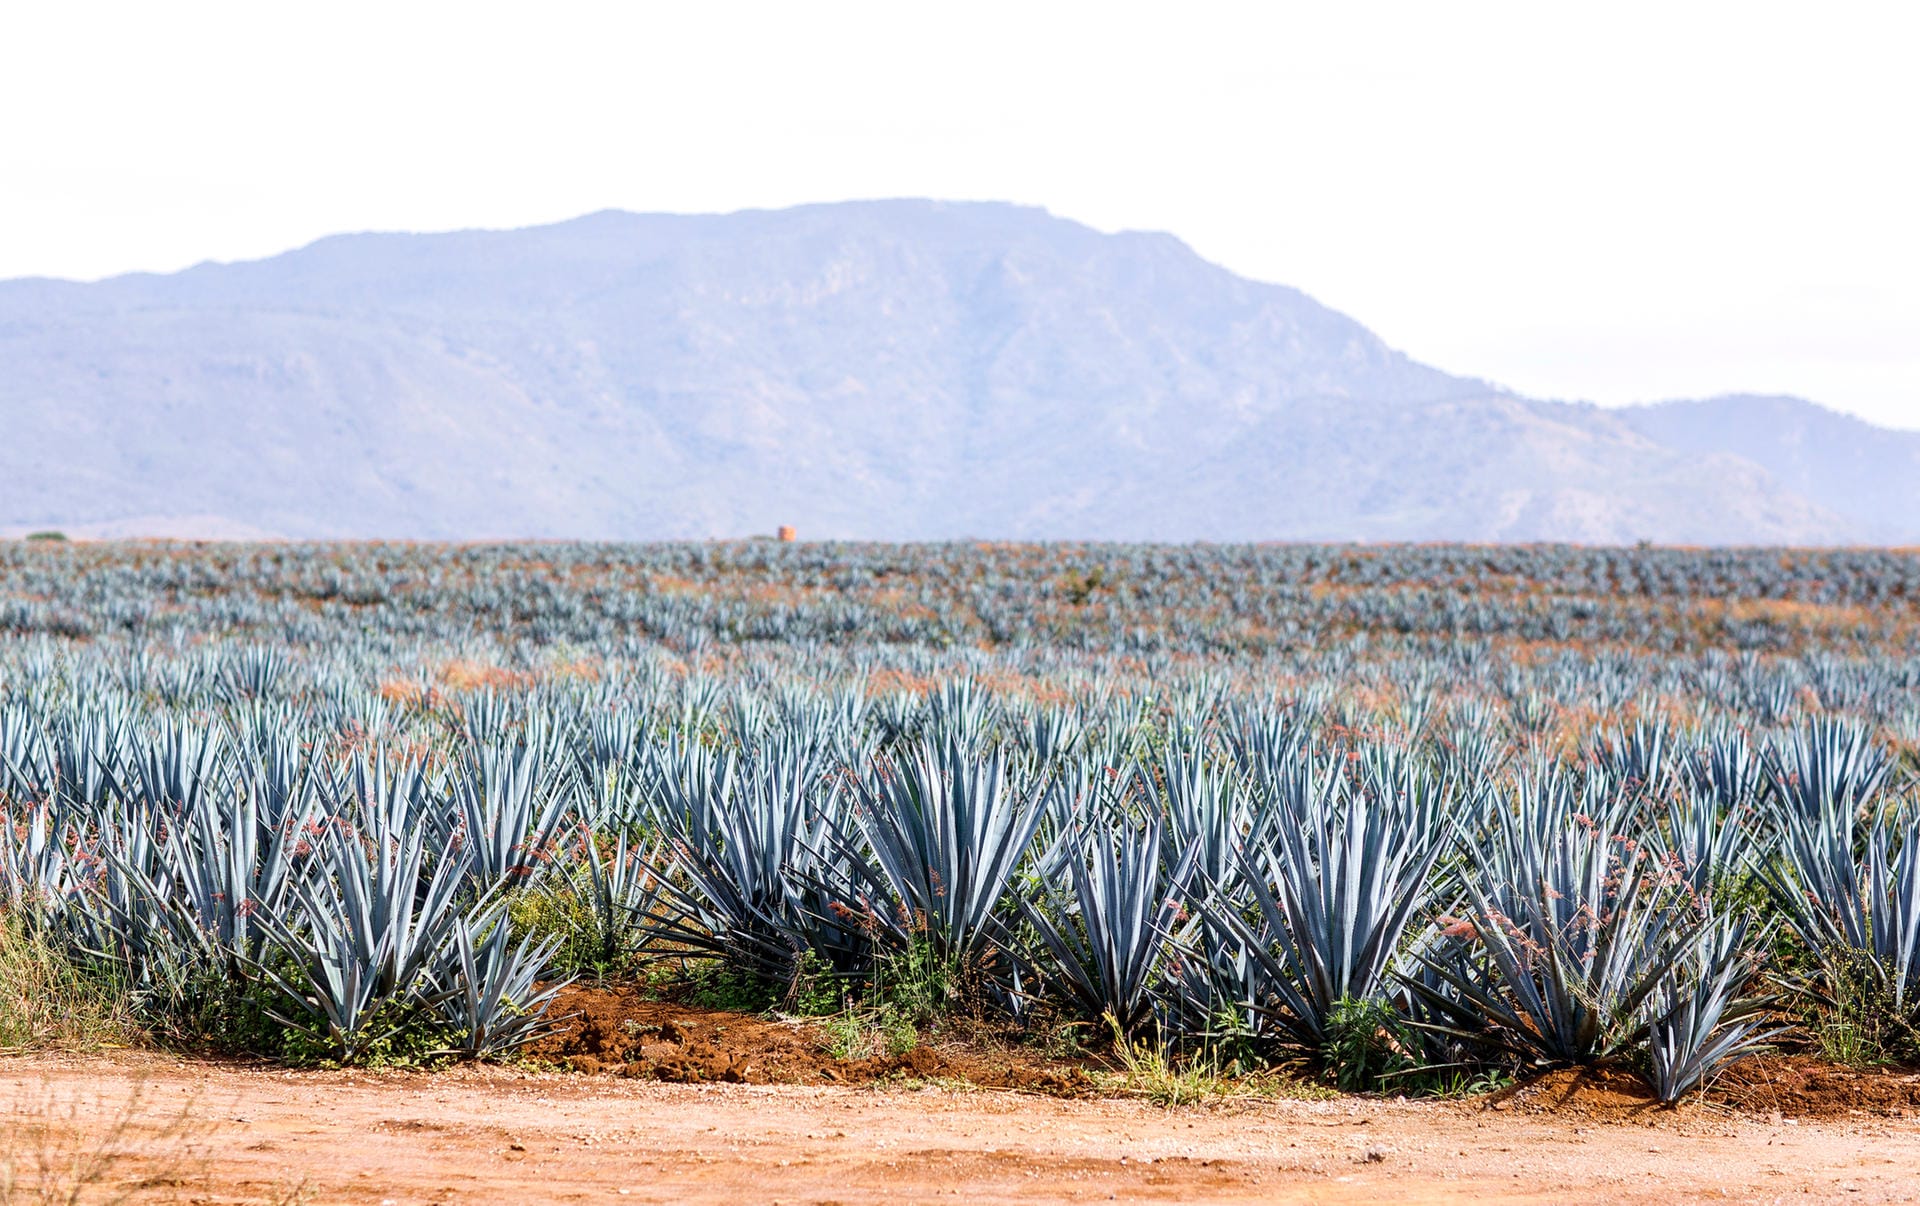 Im Hochland der mexikanischen Regionen Guadalajara und Jalisco wachsen die blauen Weber-Agaven. Die besten Tequilas bestehen zu 100 Prozent aus dem Destillat dieser Pflanzen. "Mixto"-Tequila dagegen muss nur 51 Prozent davon enthalten. Der Rest wird aus Rohrzucker destilliert.